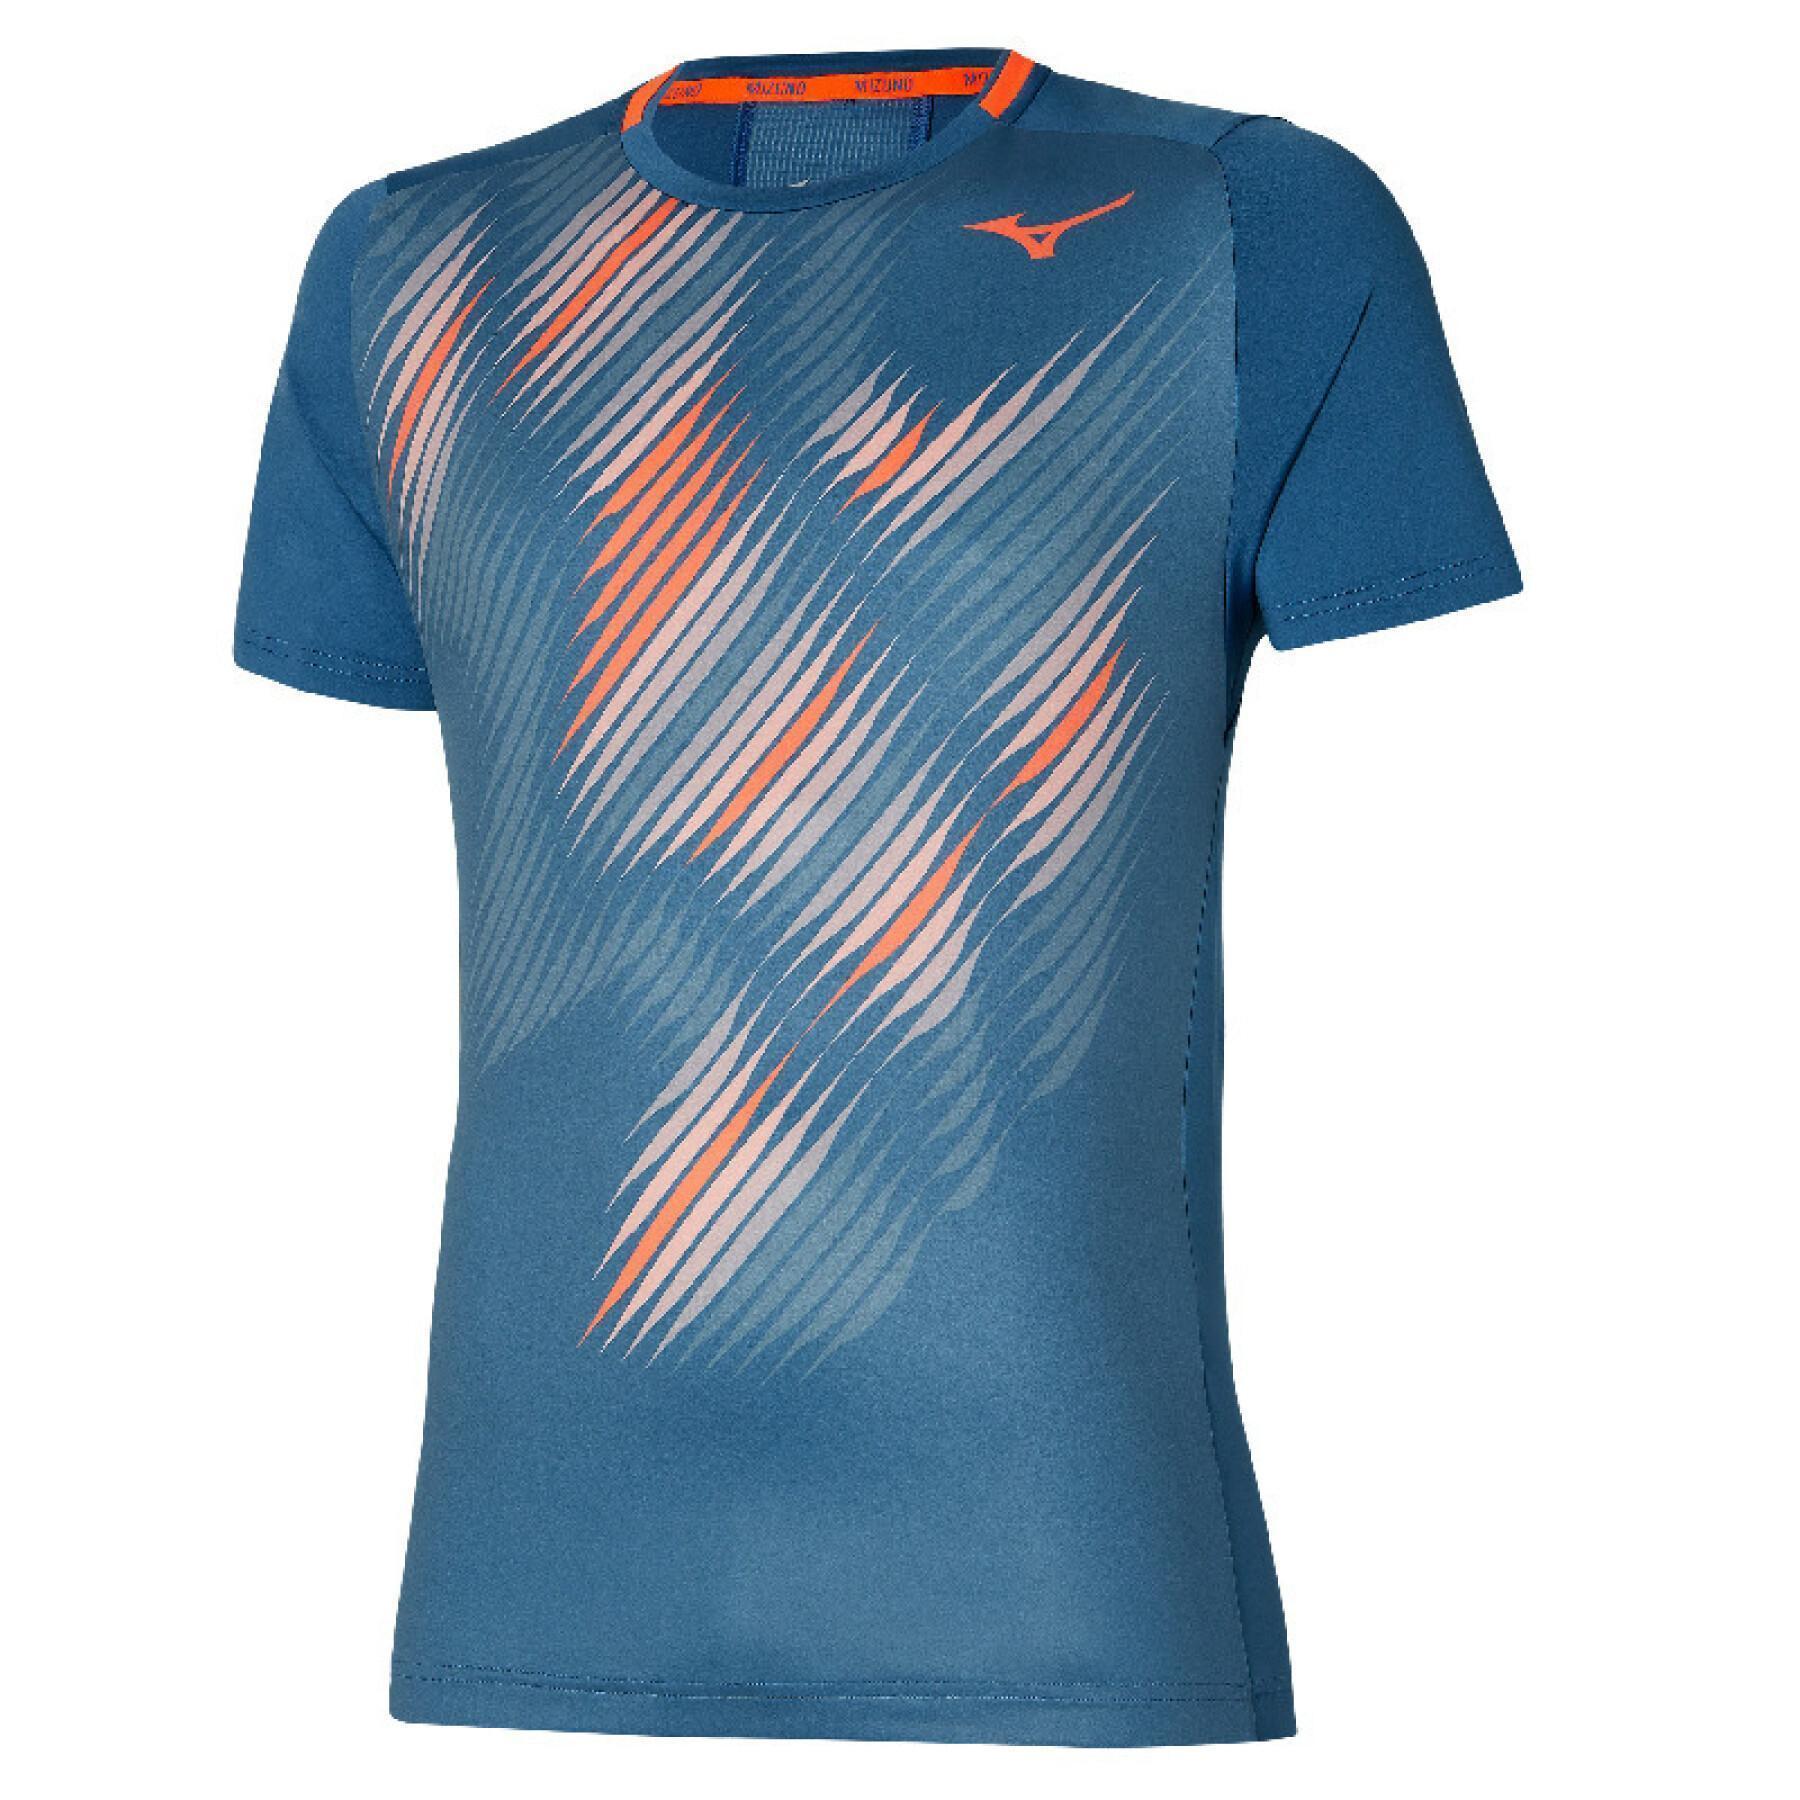 Tennis shirt Mizuno Shadow Graphic